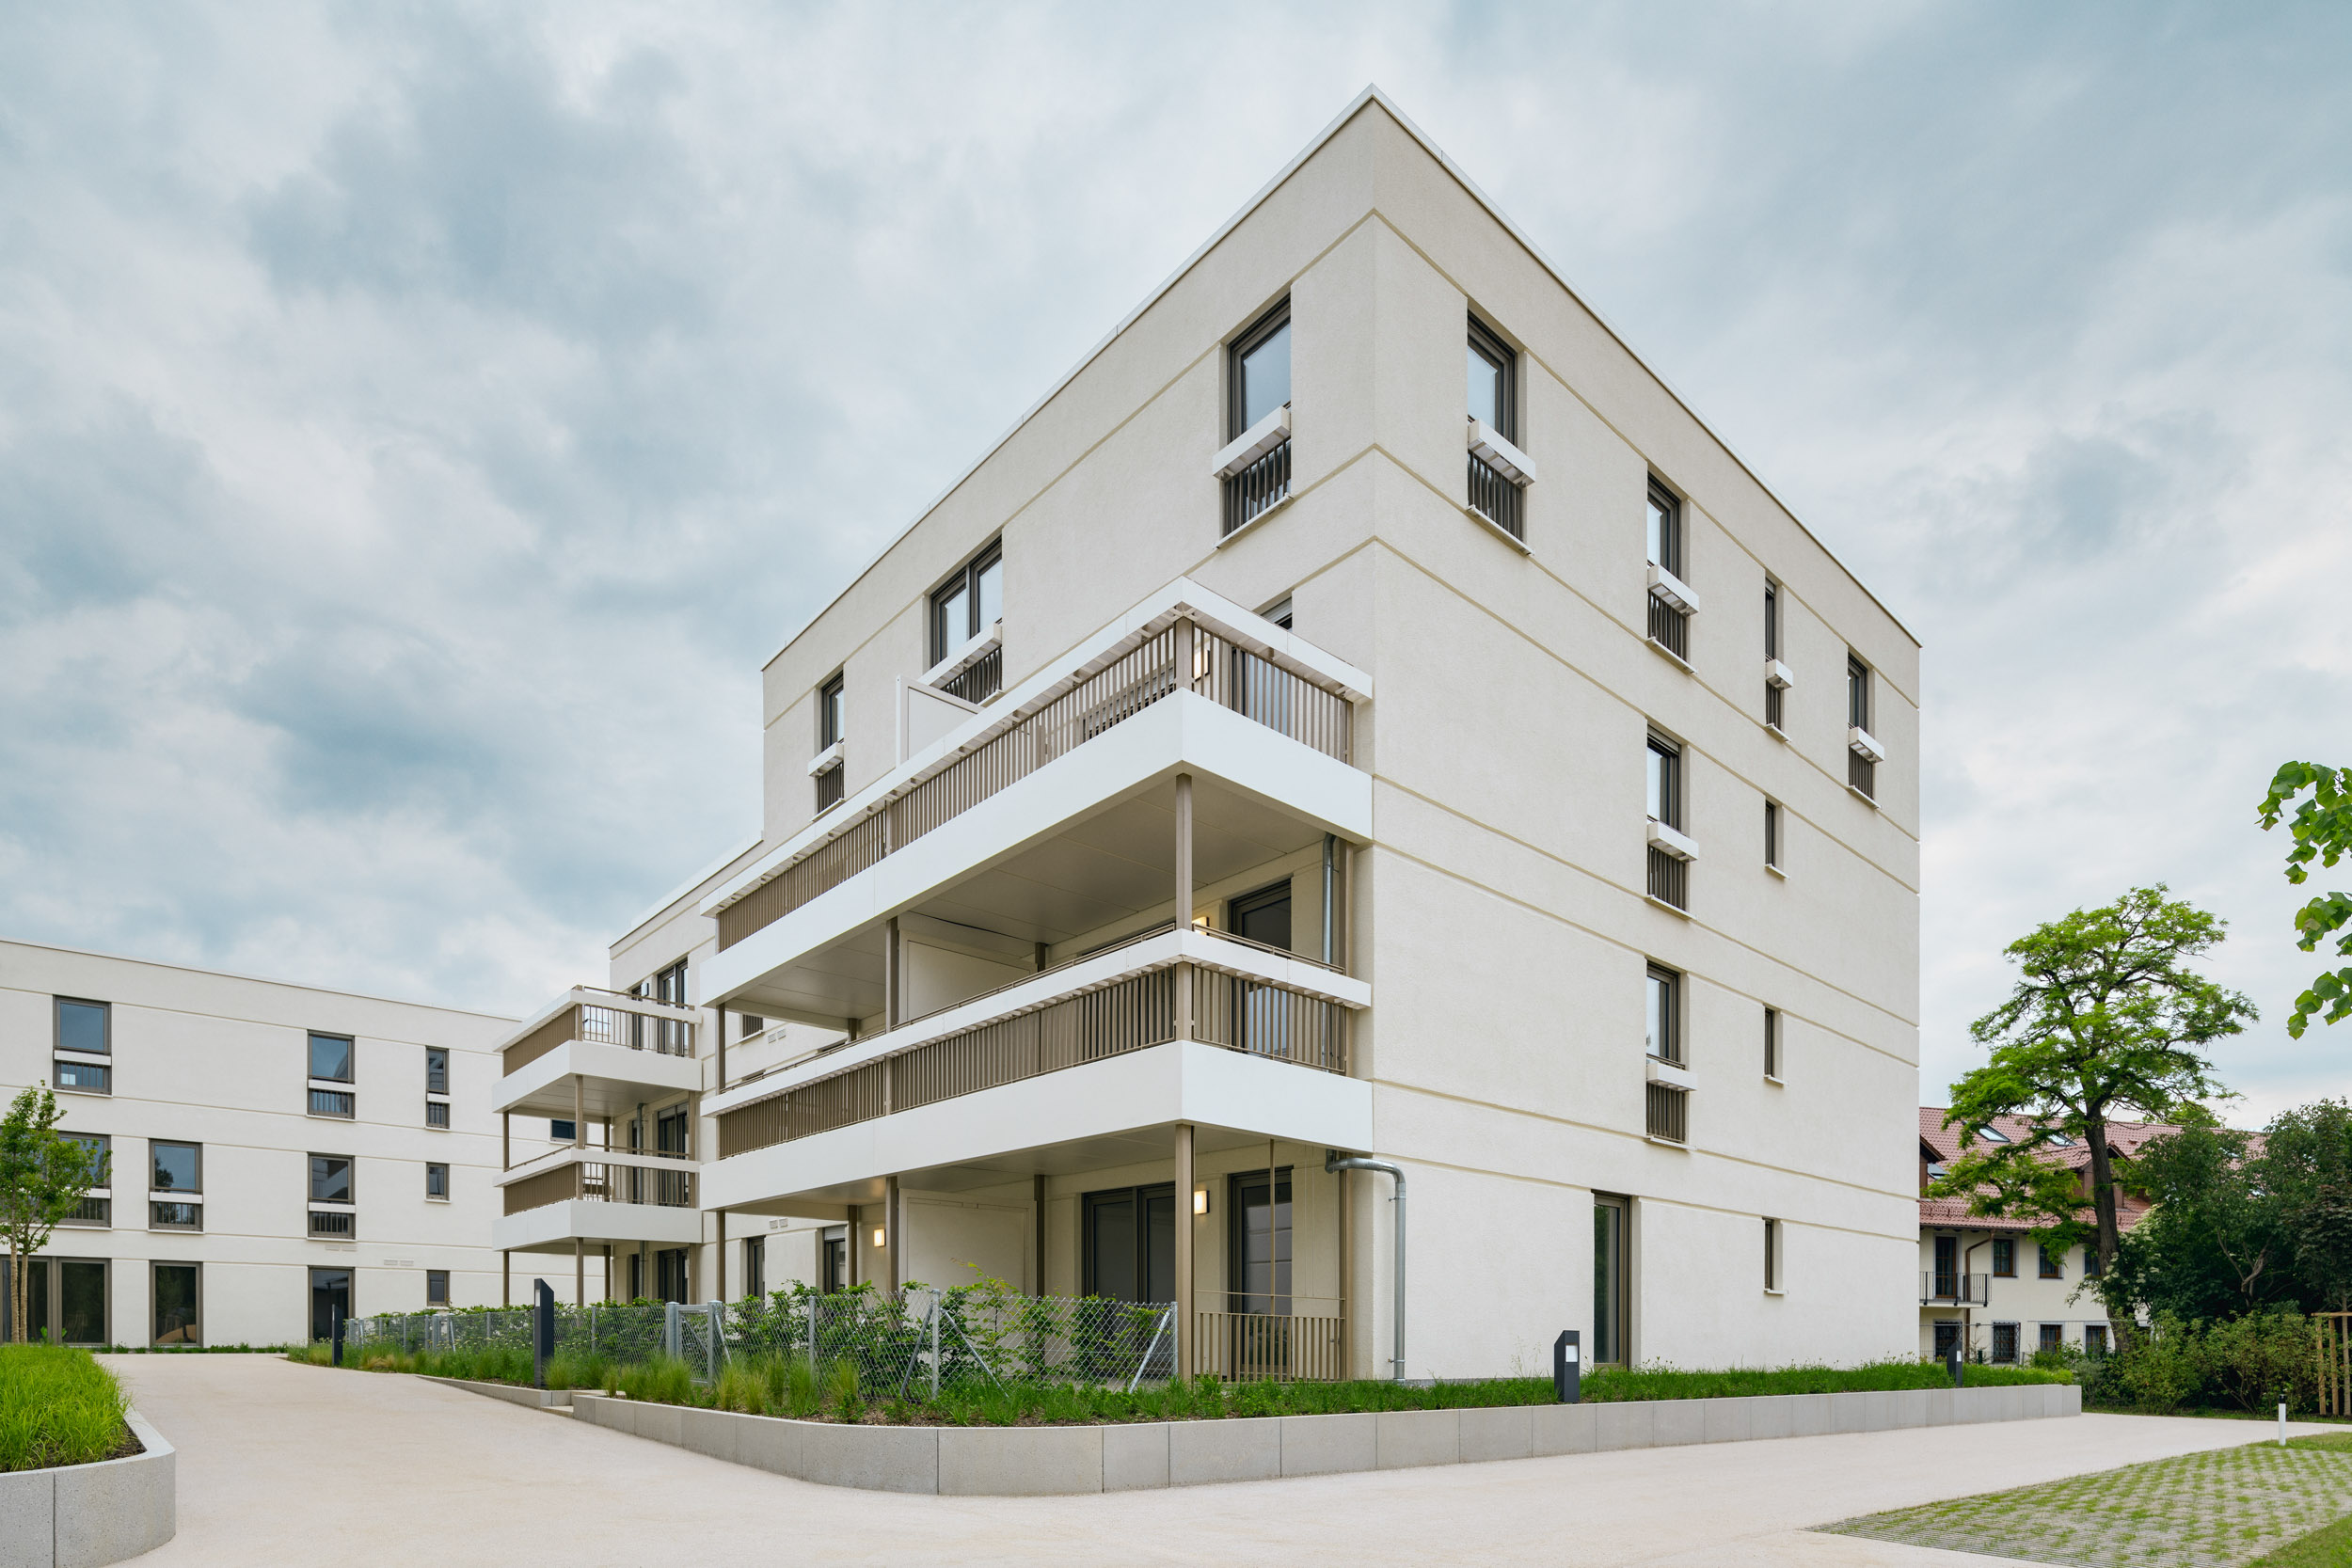 Gustav-Epple-Bauunternehmung-Tru-Living-München-Wohnbau-2020-TruLiving_MLX6854#00